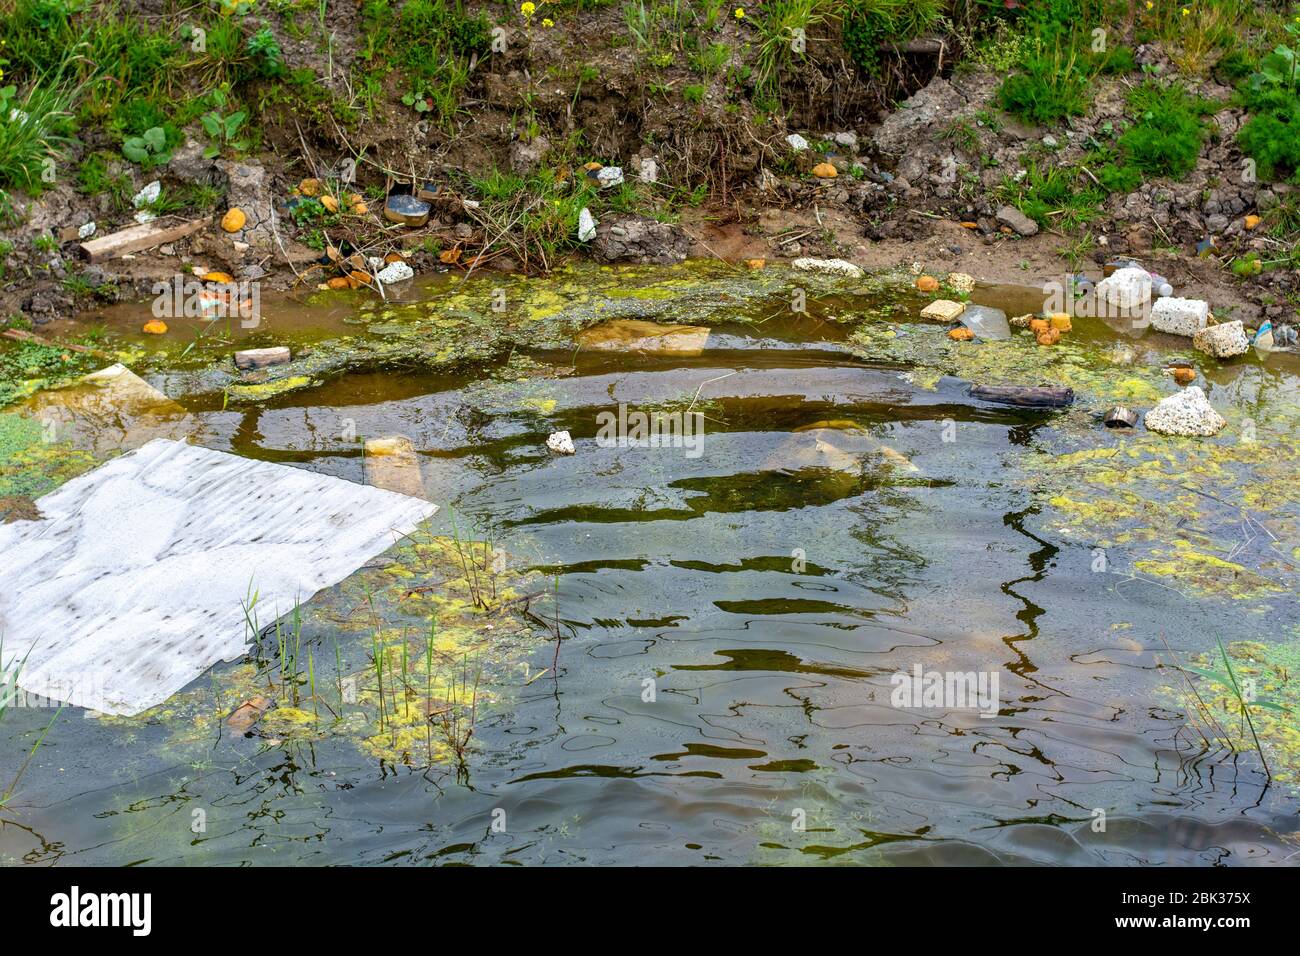 Una pudle sporca inquinata da vari rifiuti e rifiuti a causa della presenza dell'industria. Inquinamento dell'acqua. I rifiuti inquinano le nostre acque. Foto Stock